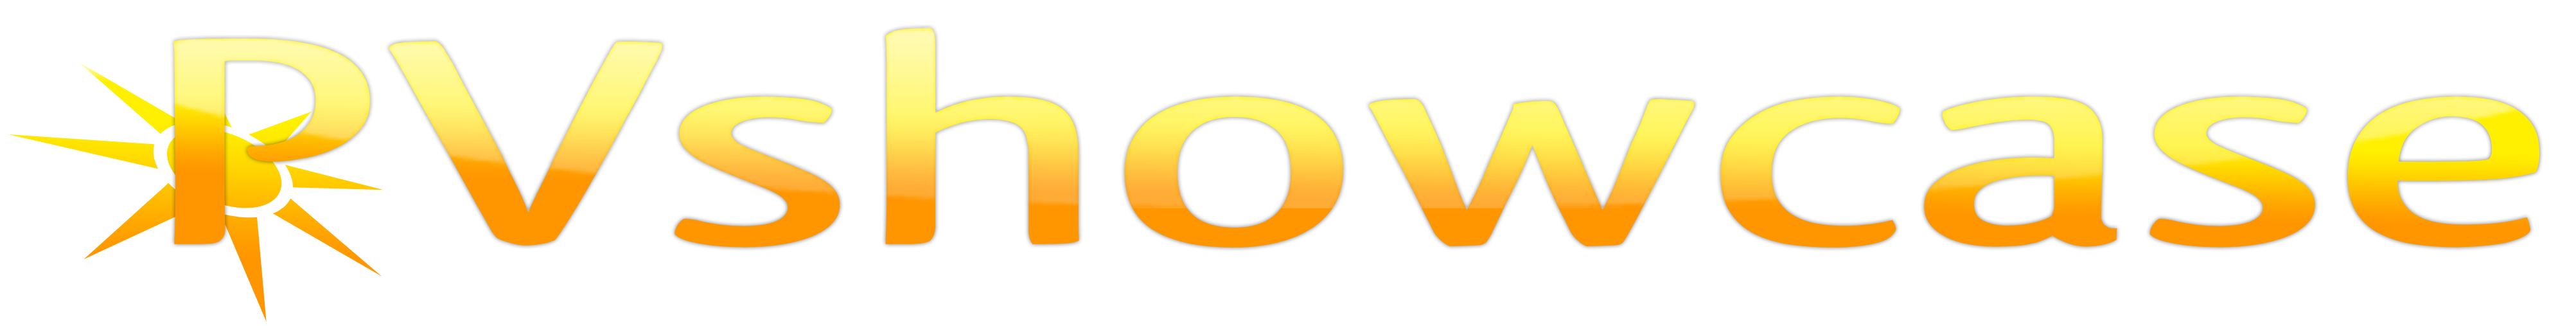 Logo PVshowcase